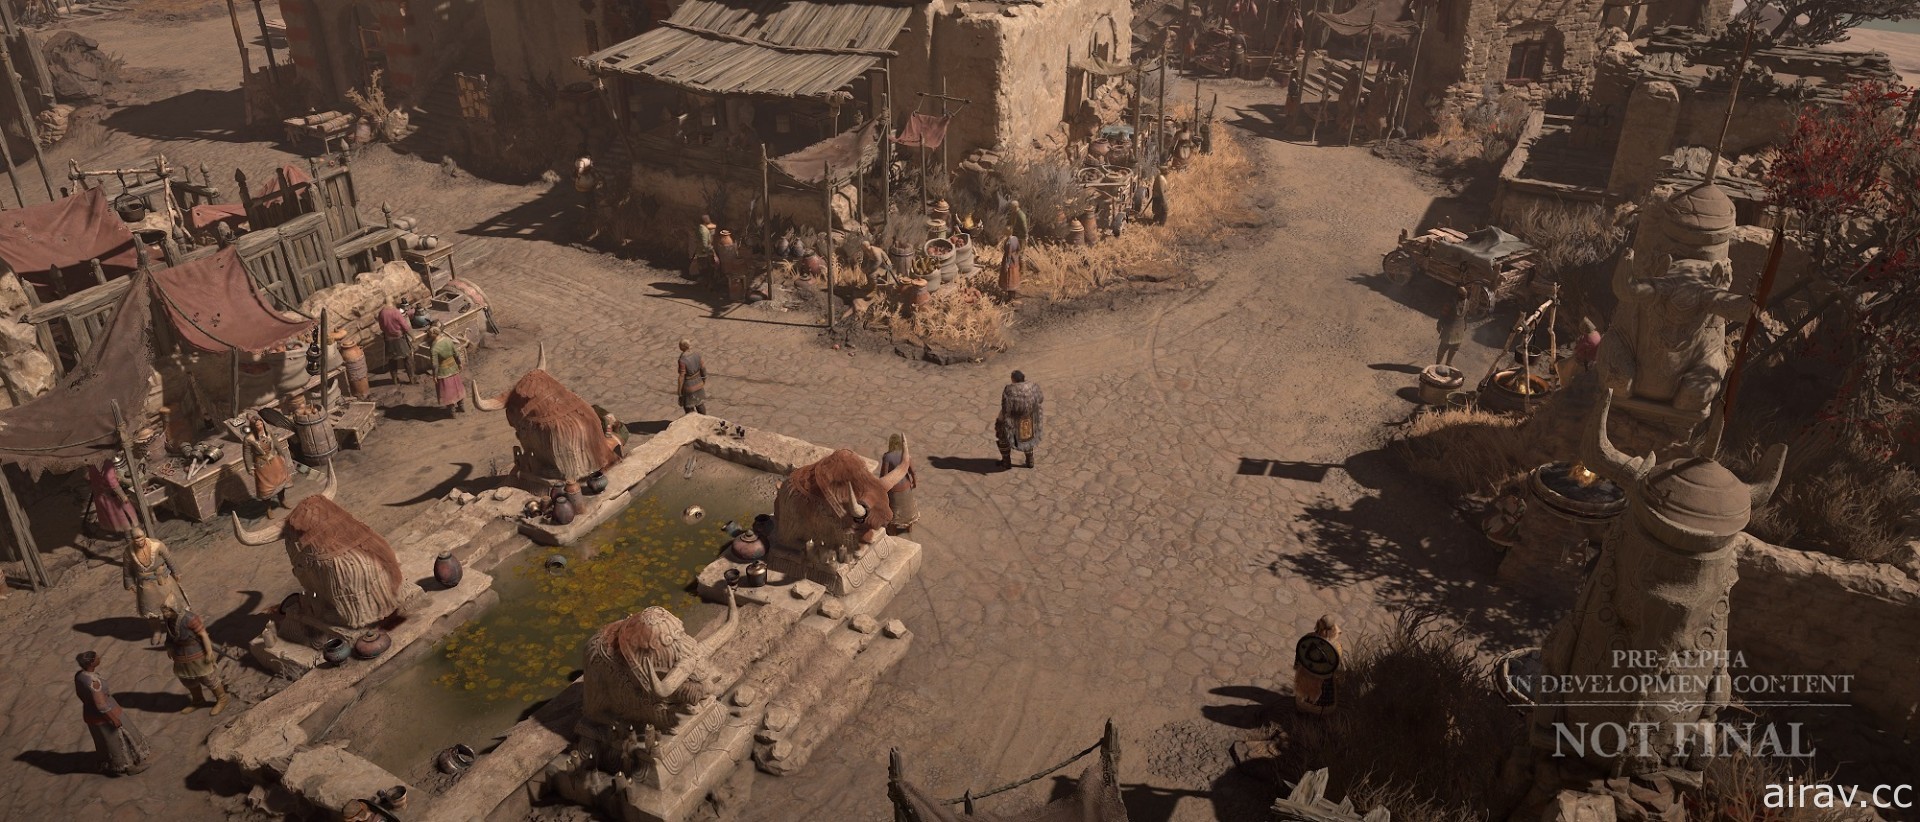 《暗黑破坏神 4》将有超过 150 个随机地下城供探索 新公开环境美术影片